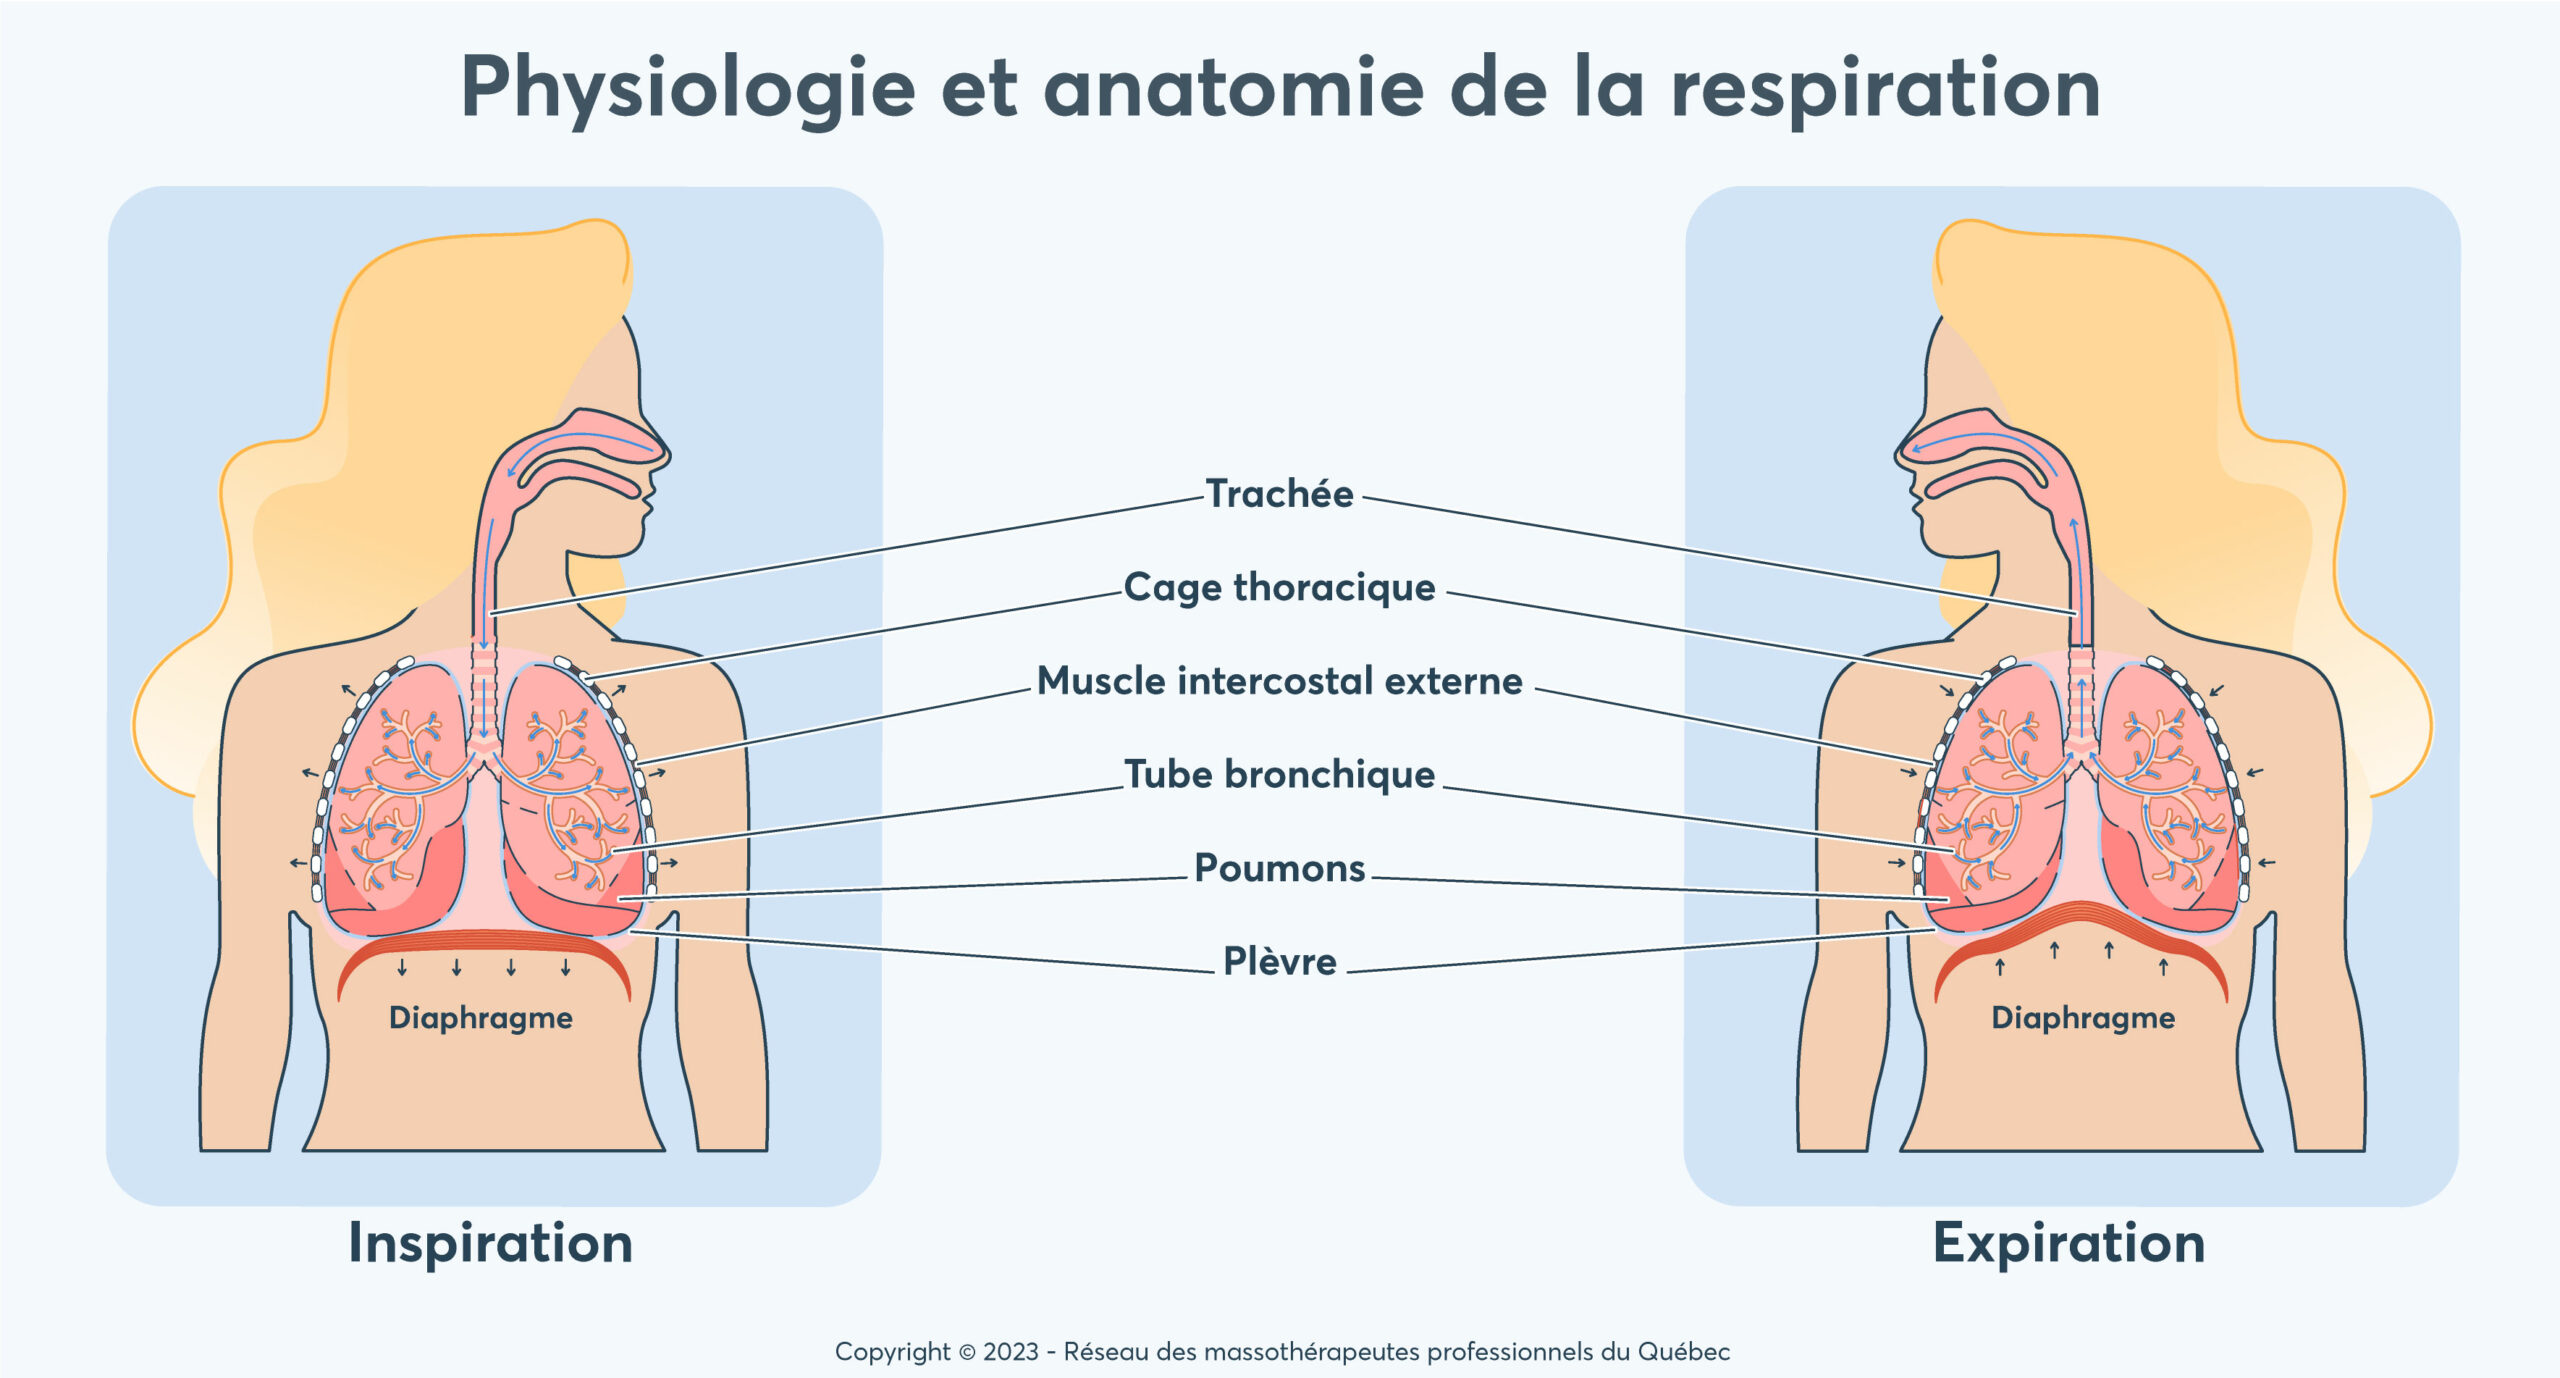 Physiologie et anatomie de la respiration